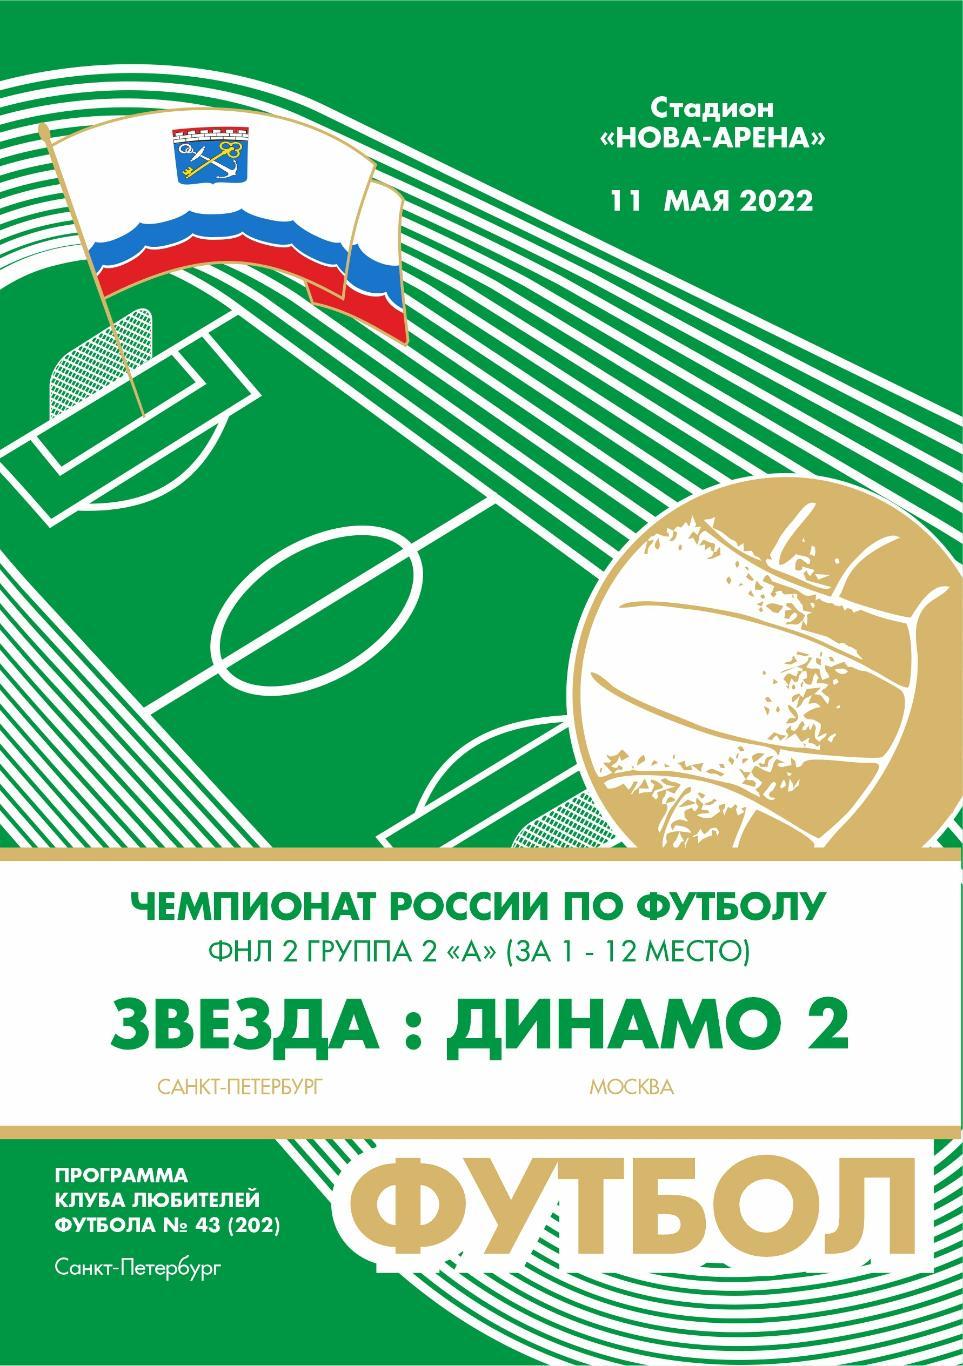 Звезда Санкт-Петербург — Динамо-2 Москва 11.05.2022. Программа КЛФ